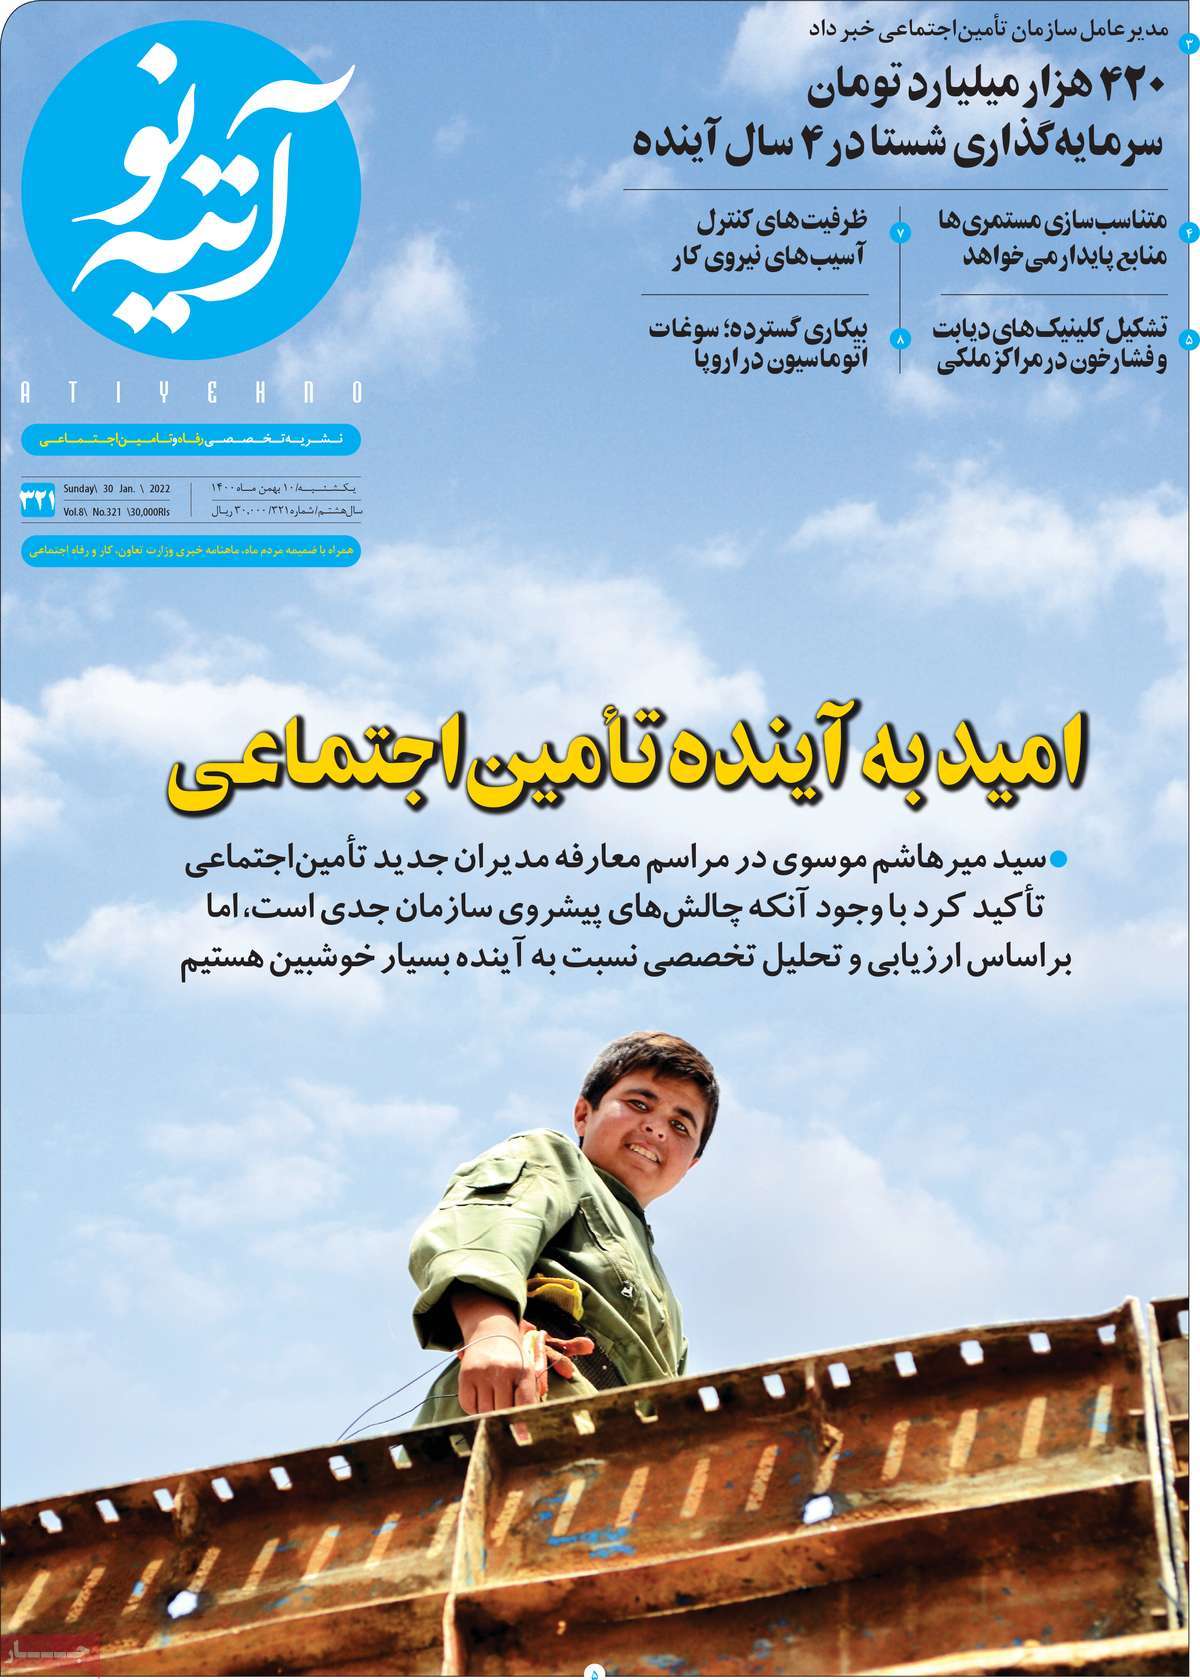 صفحه نخست مجله آتیه نو - یکشنبه, ۱۰ بهمن ۱۴۰۰